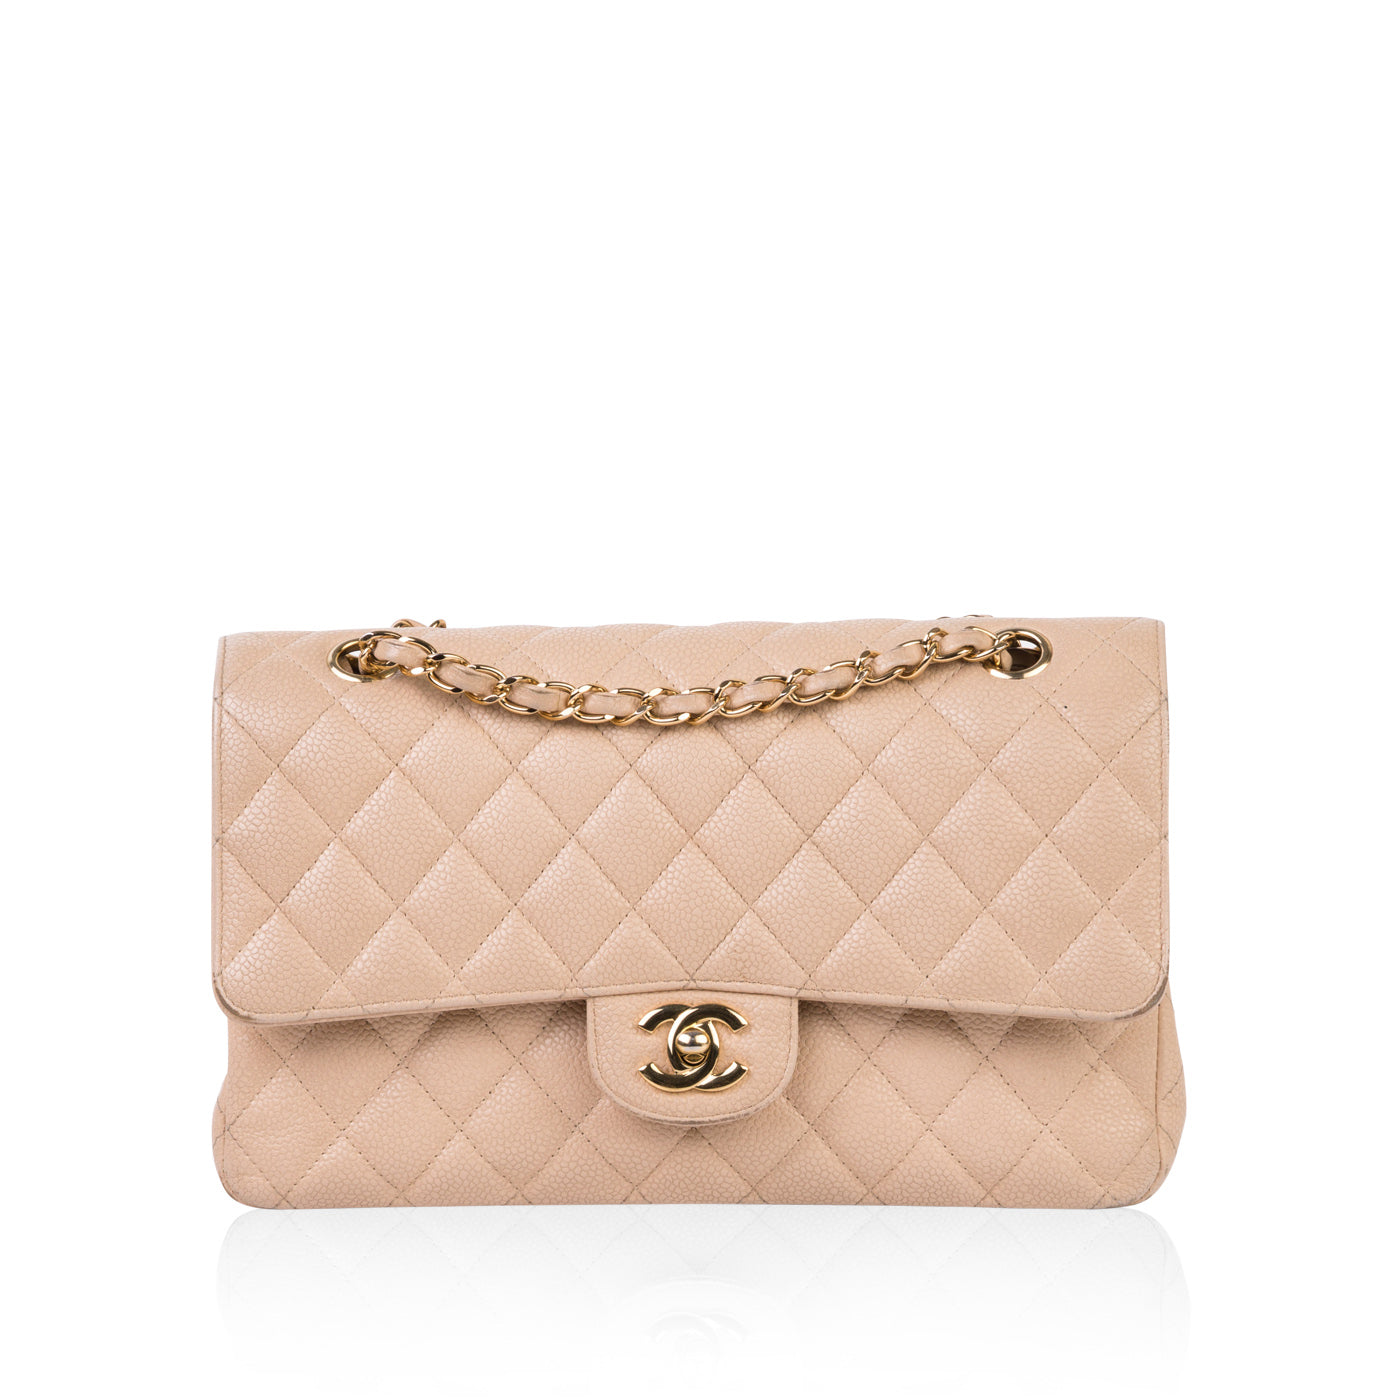 Chanel - Classic Flap Bag - Medium - Beige Caviar - GHW